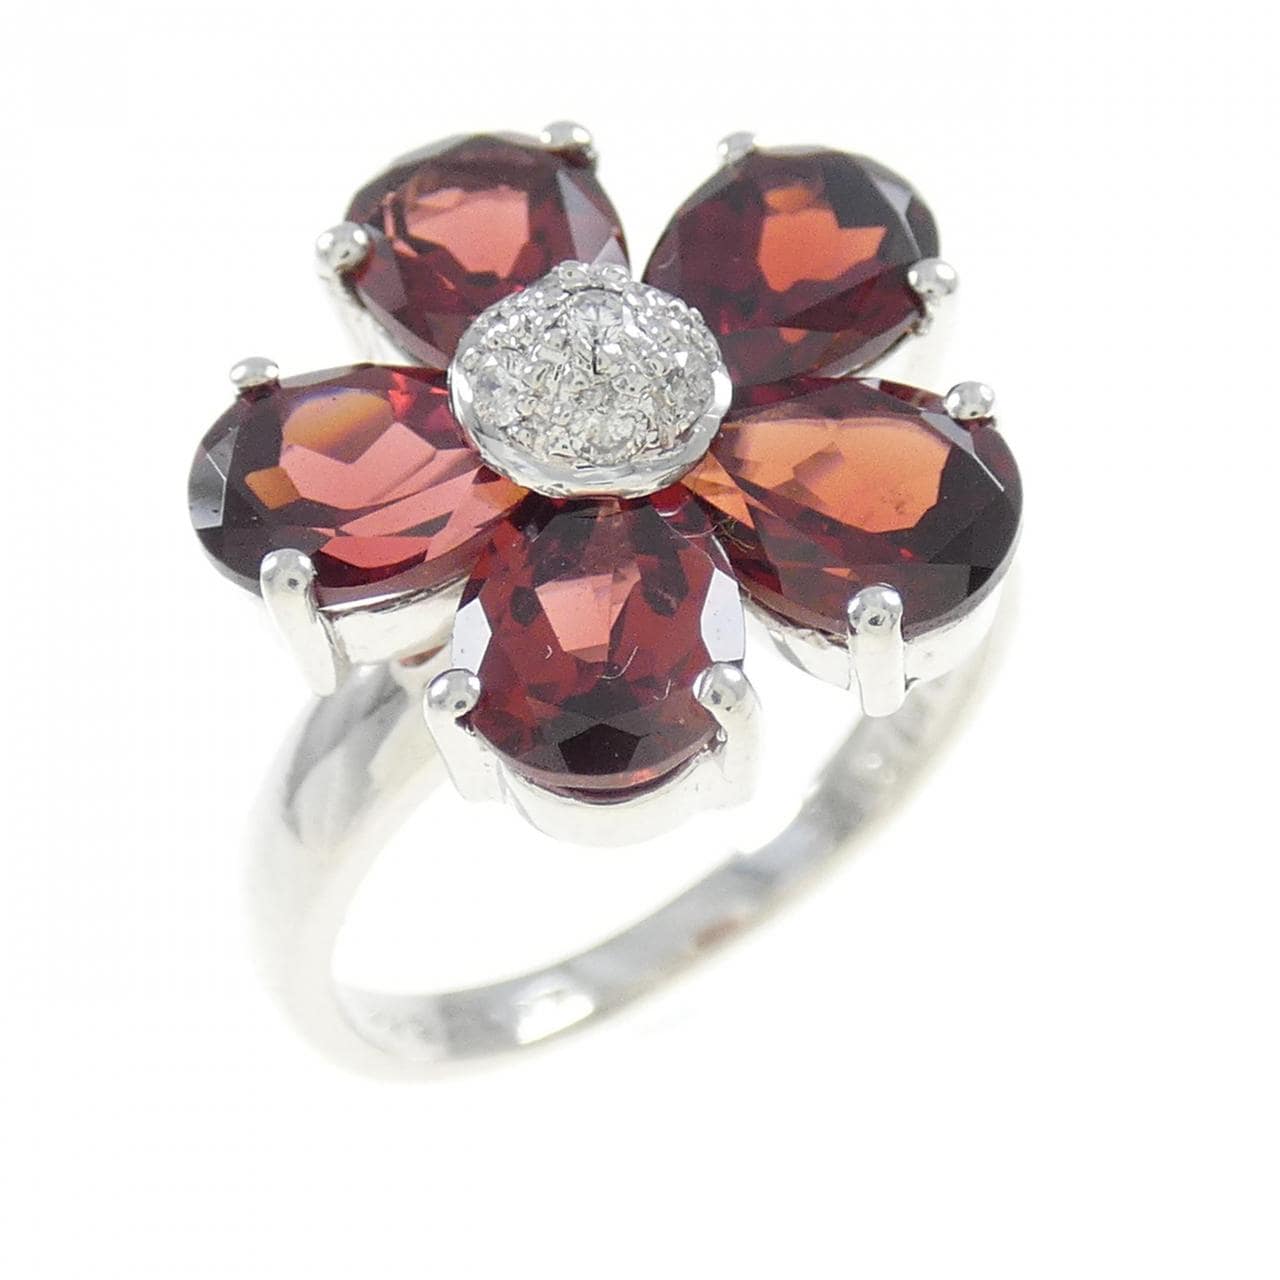 K18WG flower Garnet ring 4.72CT